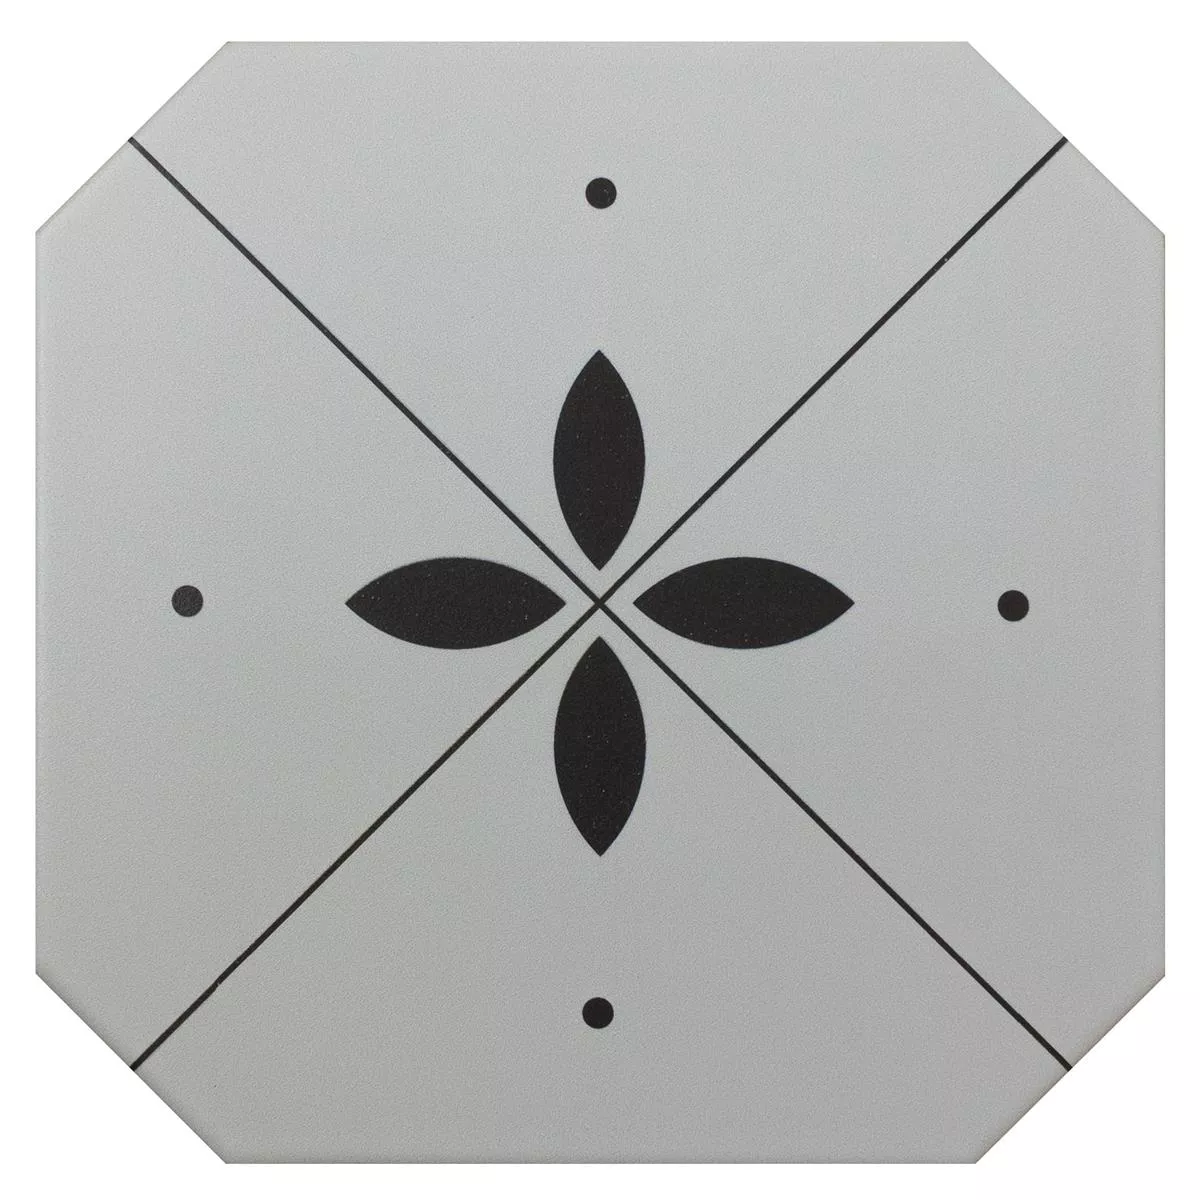 Sample from Porcelain Stoneware Tiles Genexia Black Blanc Decor 4 Octagon 20x20cm